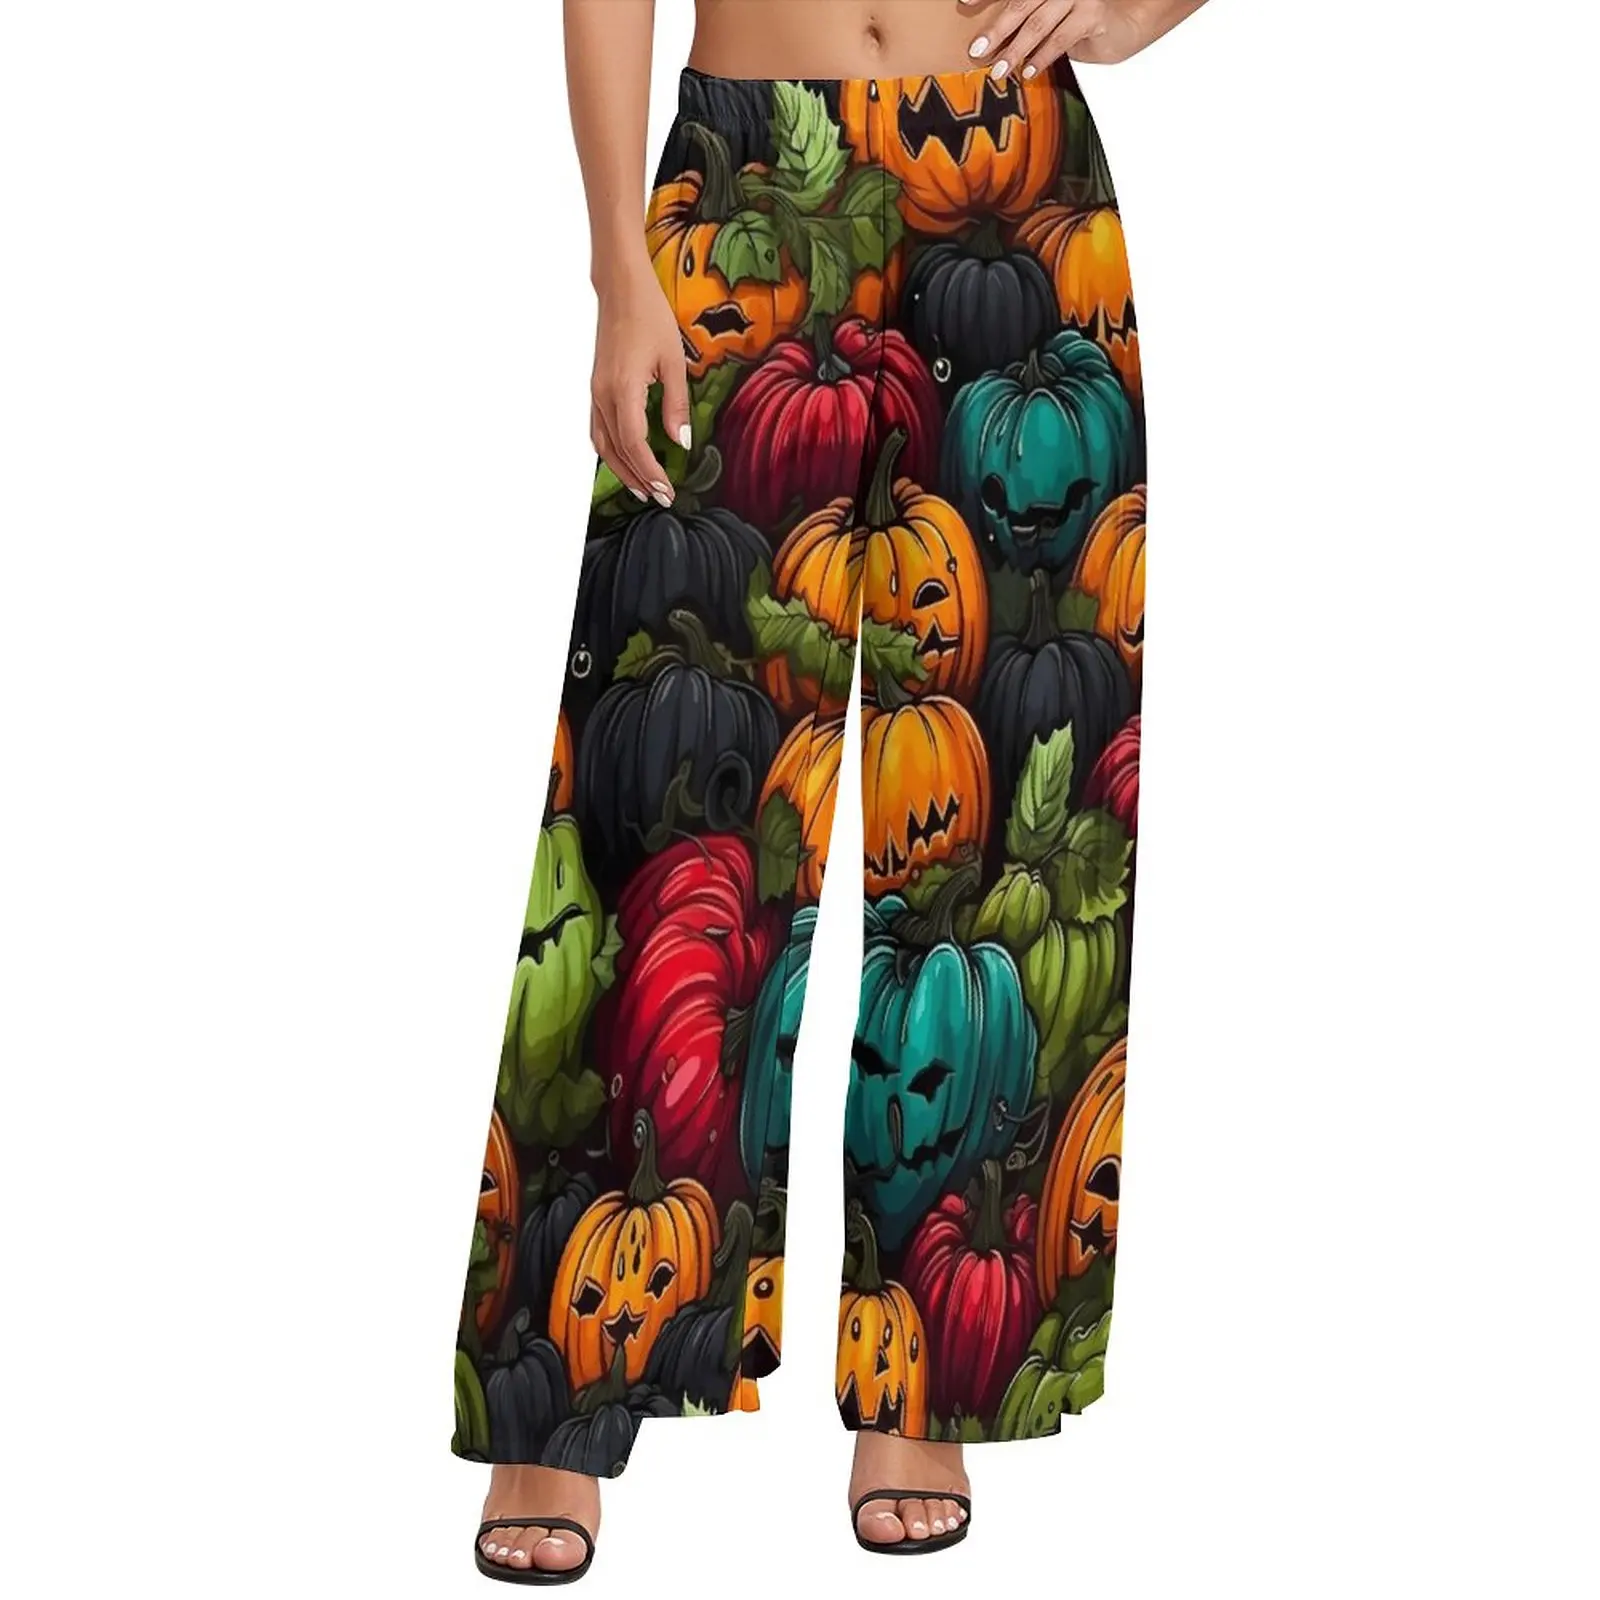 

Прямые брюки с принтом на Хэллоуин, забавные широкие брюки с тыквой, женские брюки большого размера, уличная одежда на заказ